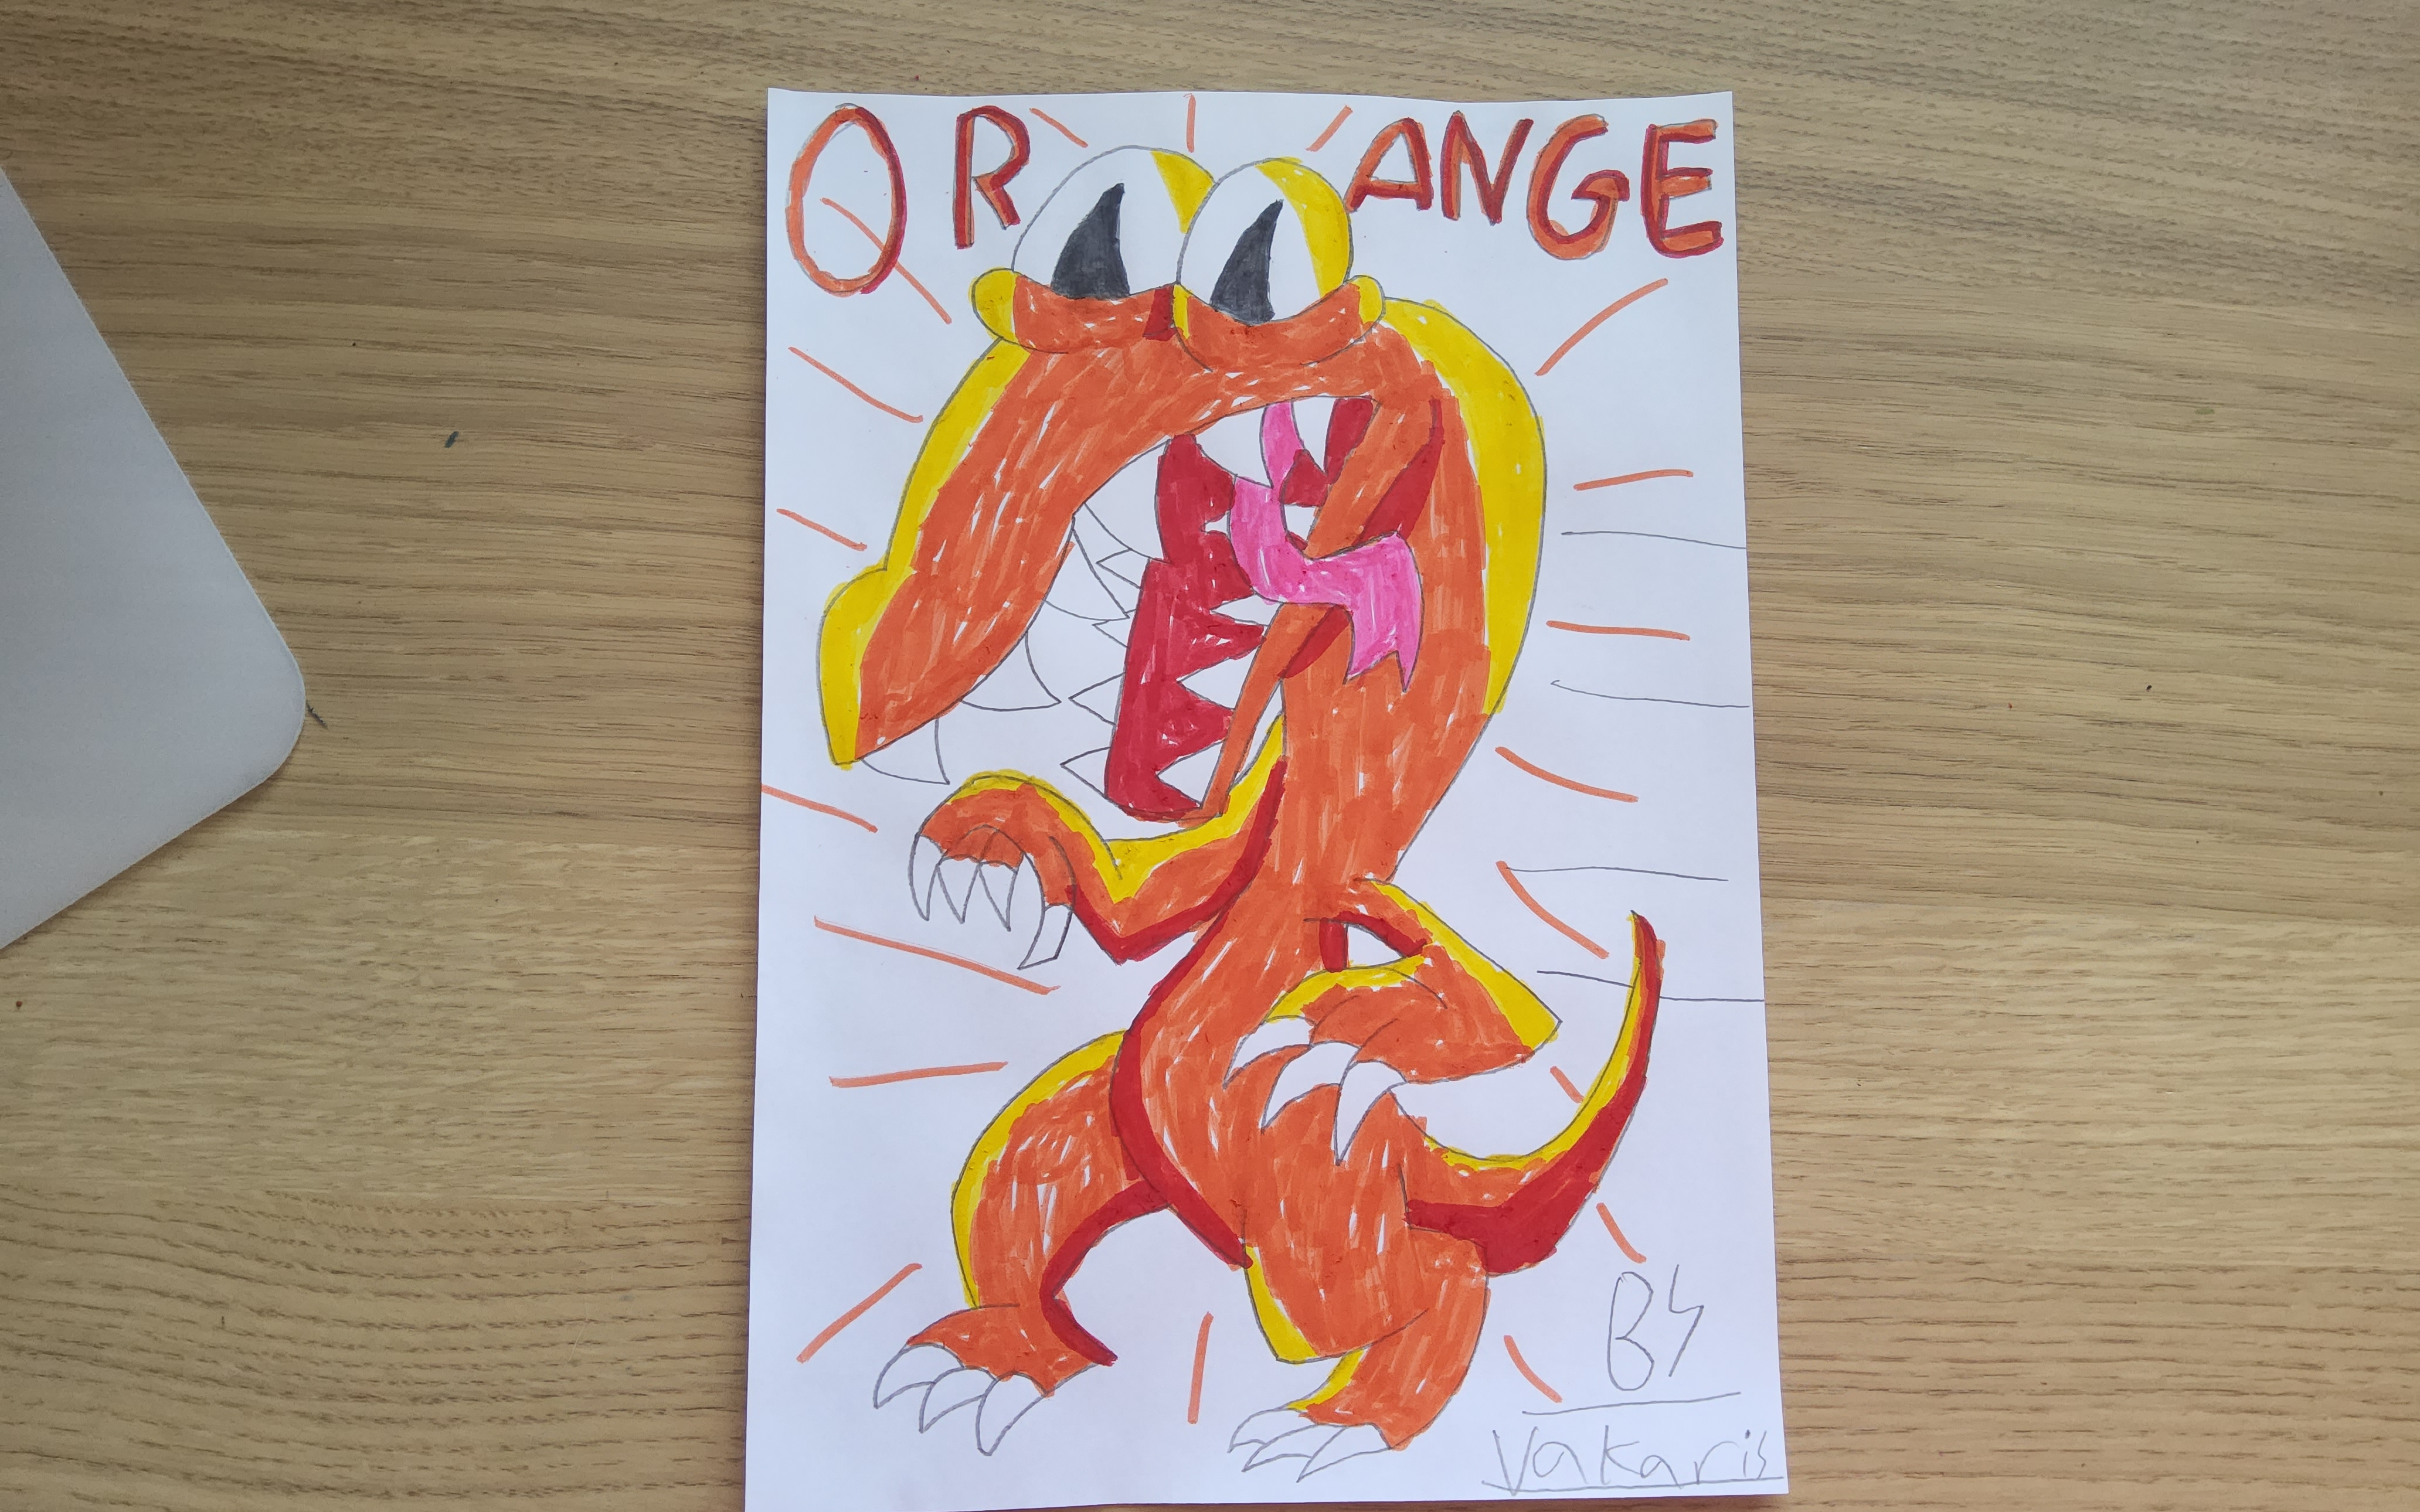 Orange from Rainbow Friends by DuckCatTheQurugosk on DeviantArt